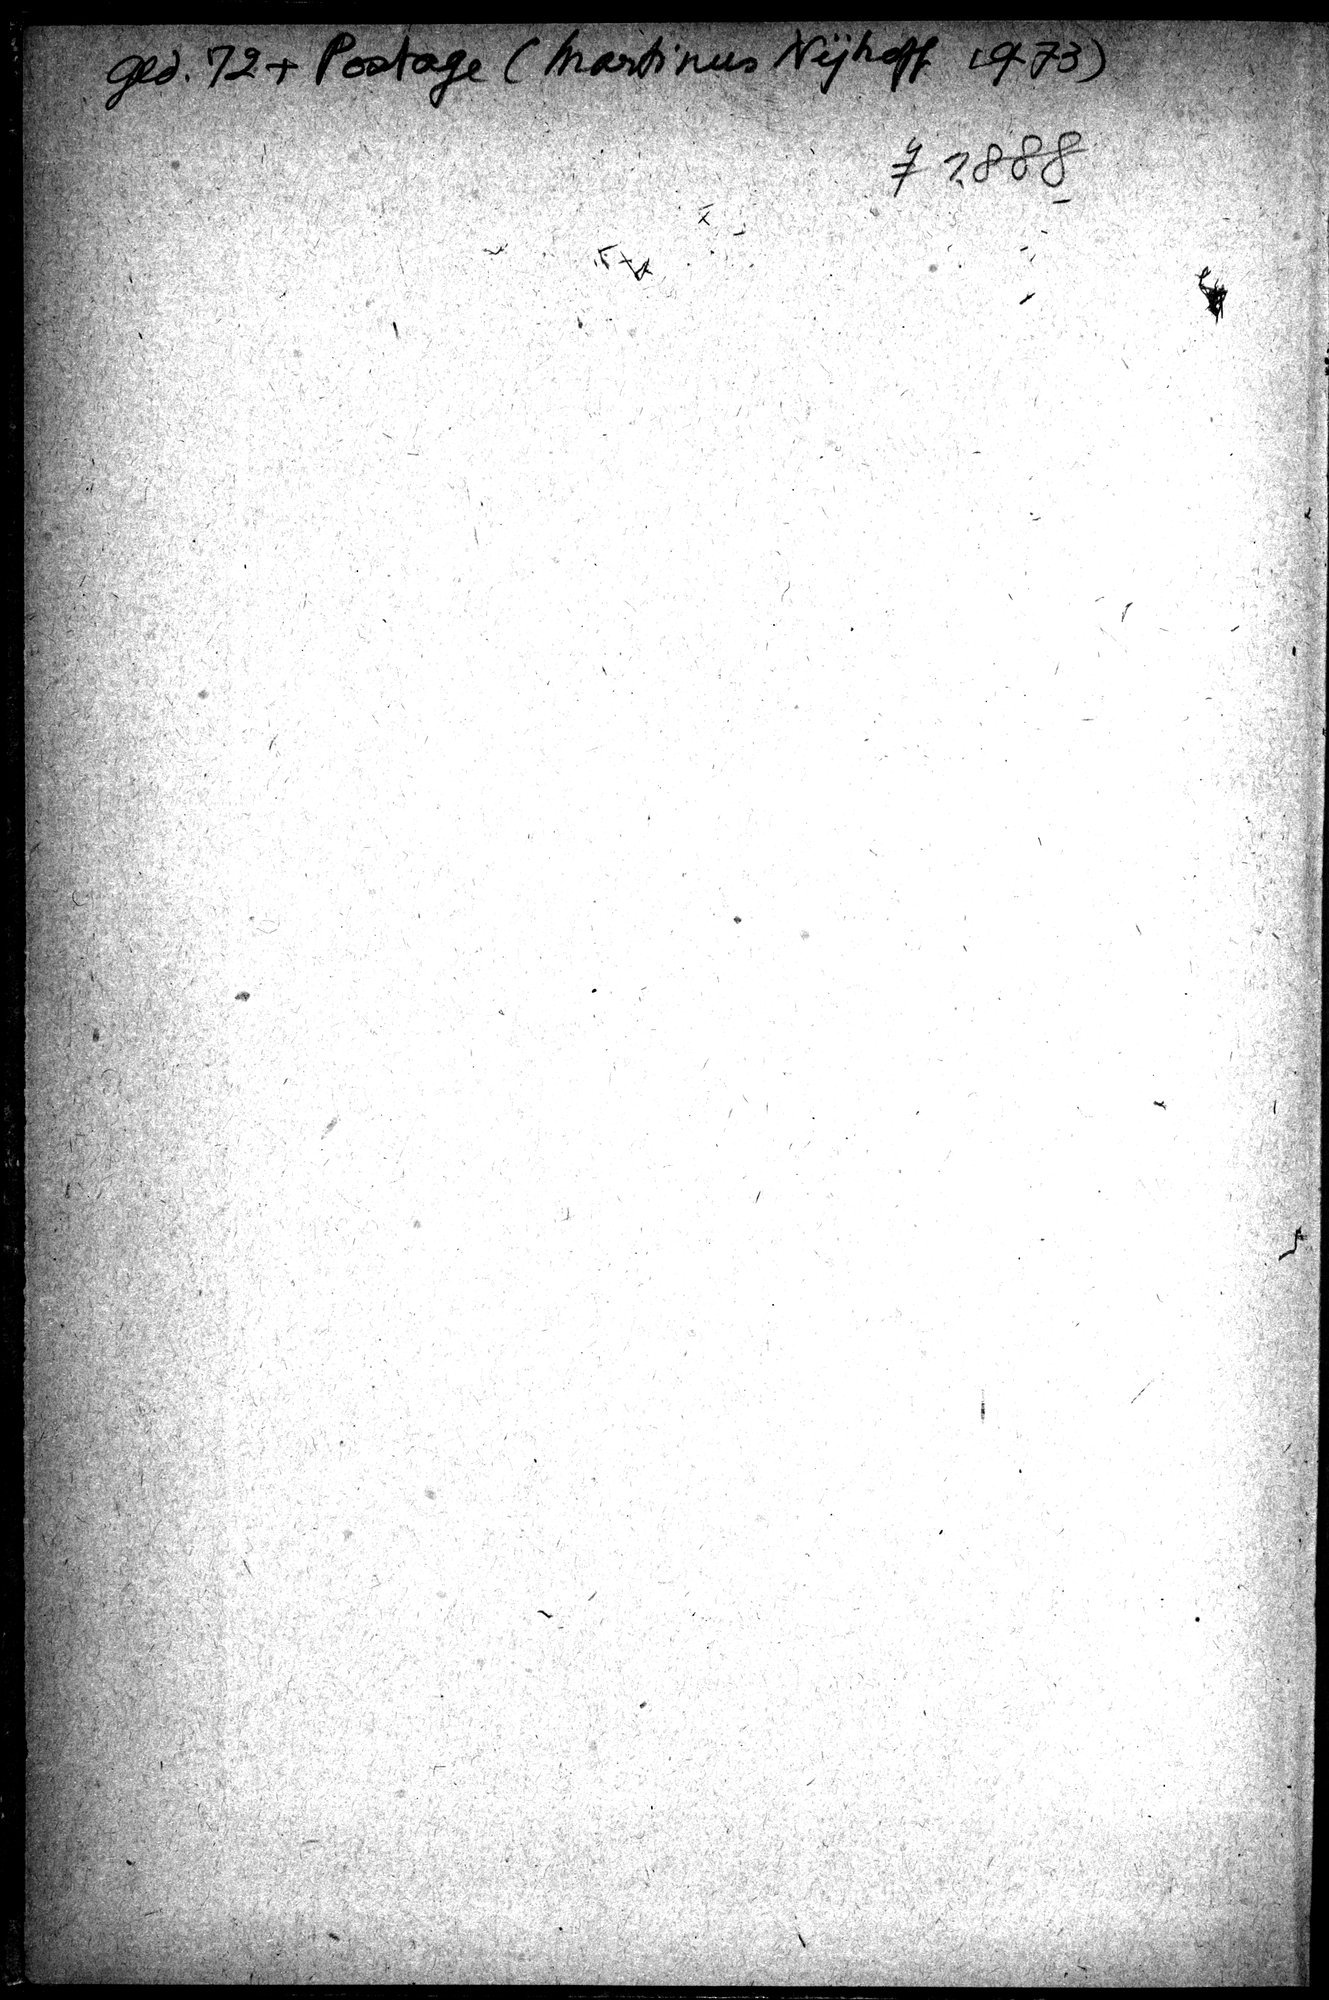 Puteshestvie v Tian' - Shan' v 1856-1857 godakh : vol.1 / 282 ページ（白黒高解像度画像）